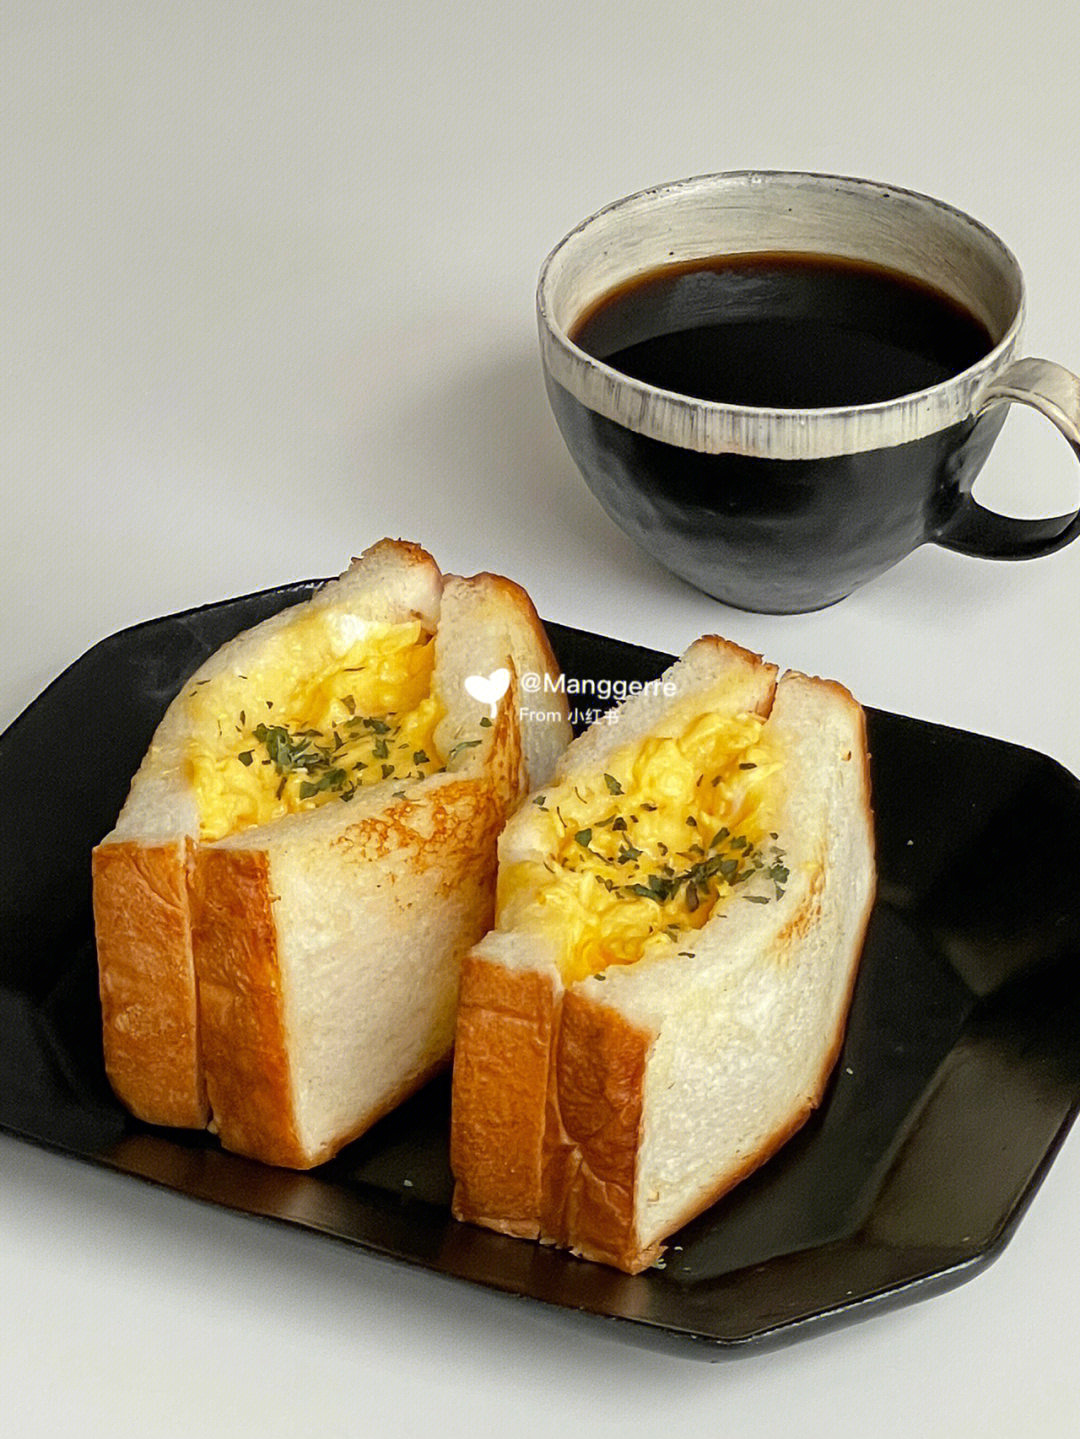 这可能是我分享过的特别简单的三明治00只用到了鸡蛋,芝士,和吐司